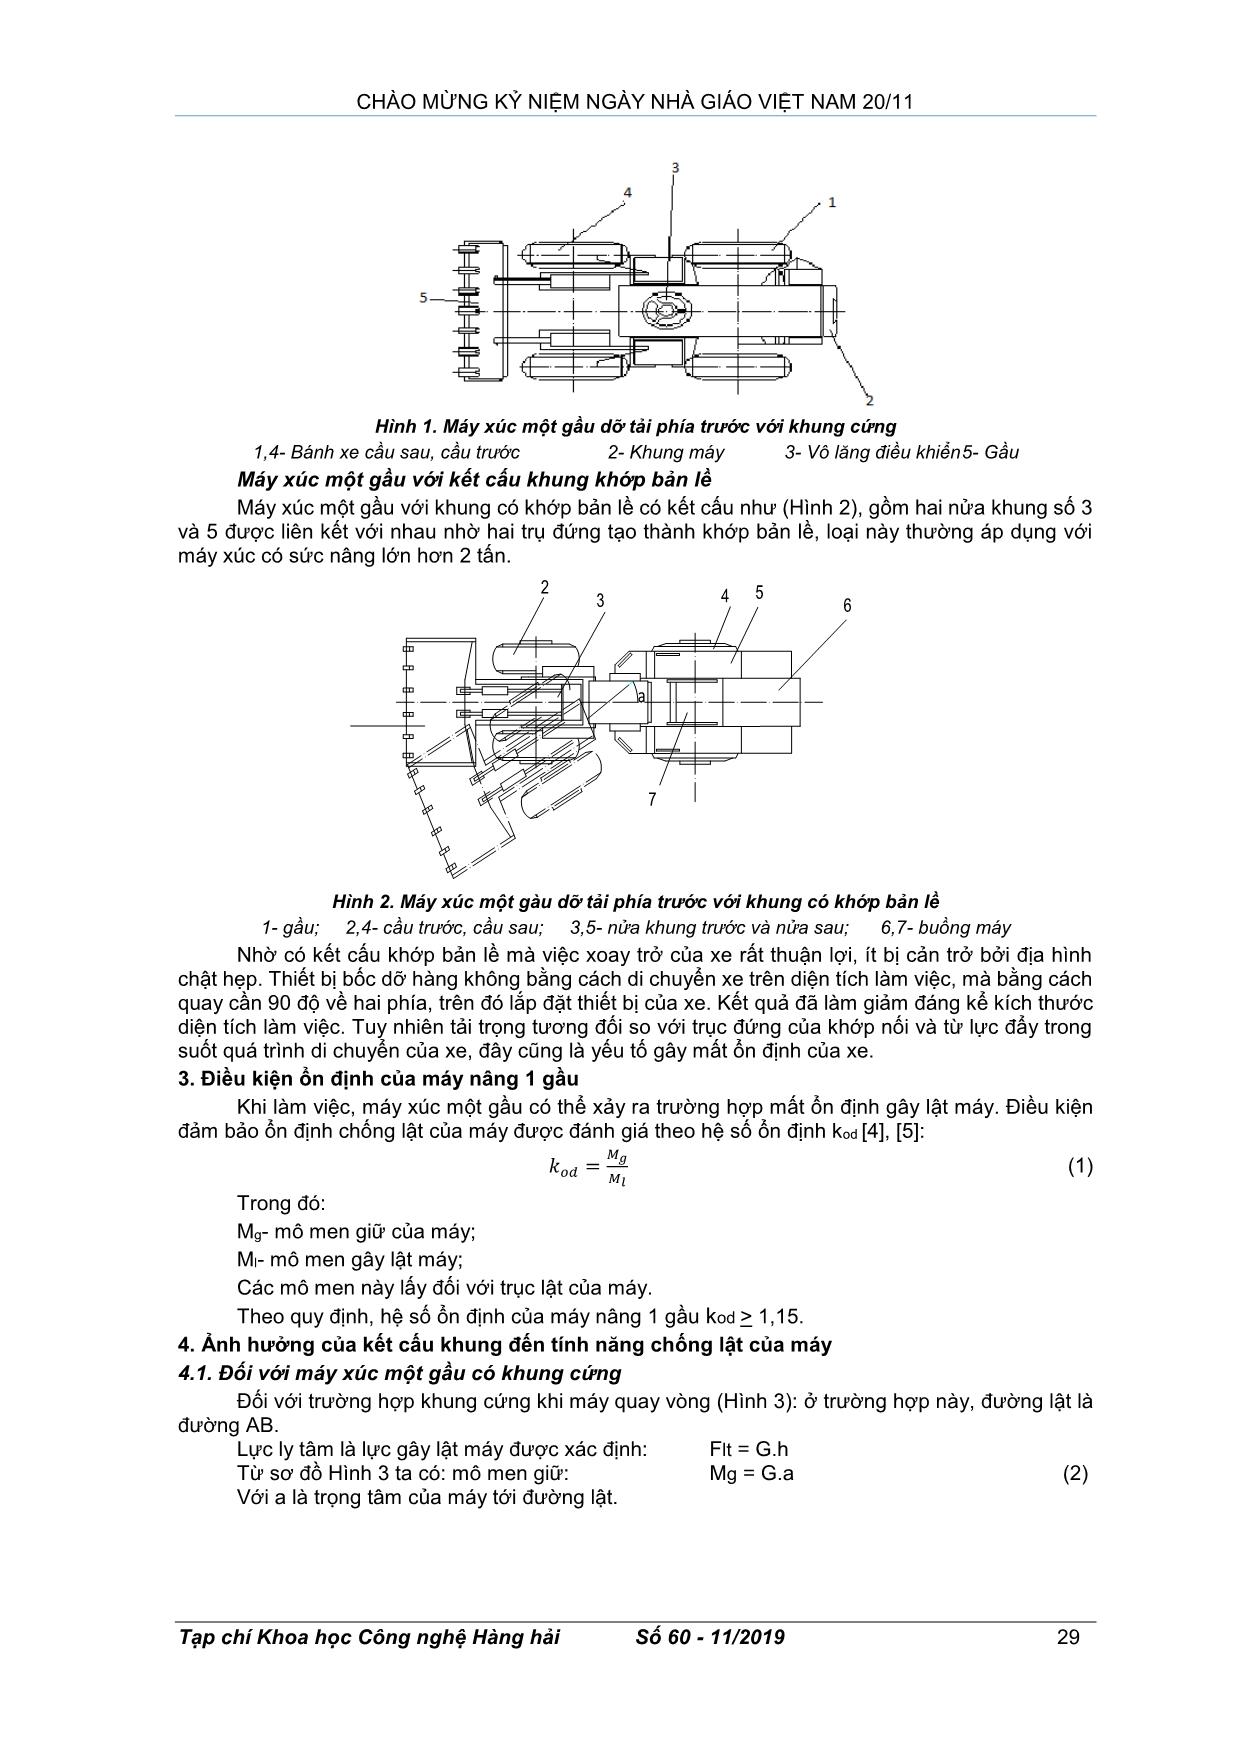 Ảnh hưởng kết cấu khung đến tính ổn định của máy xúc một gầu trang 2